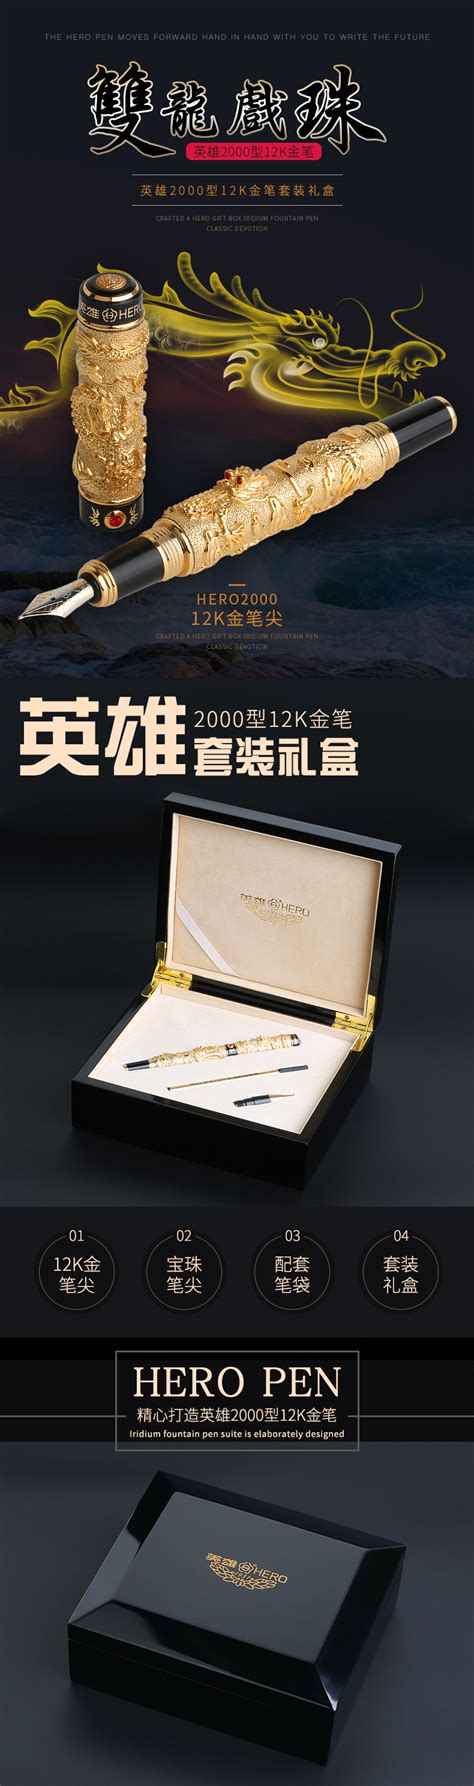 明前双龙雀舌320g礼盒装 - 产品展示 - 旺苍县双龙茶业_茶与高山-官方网站